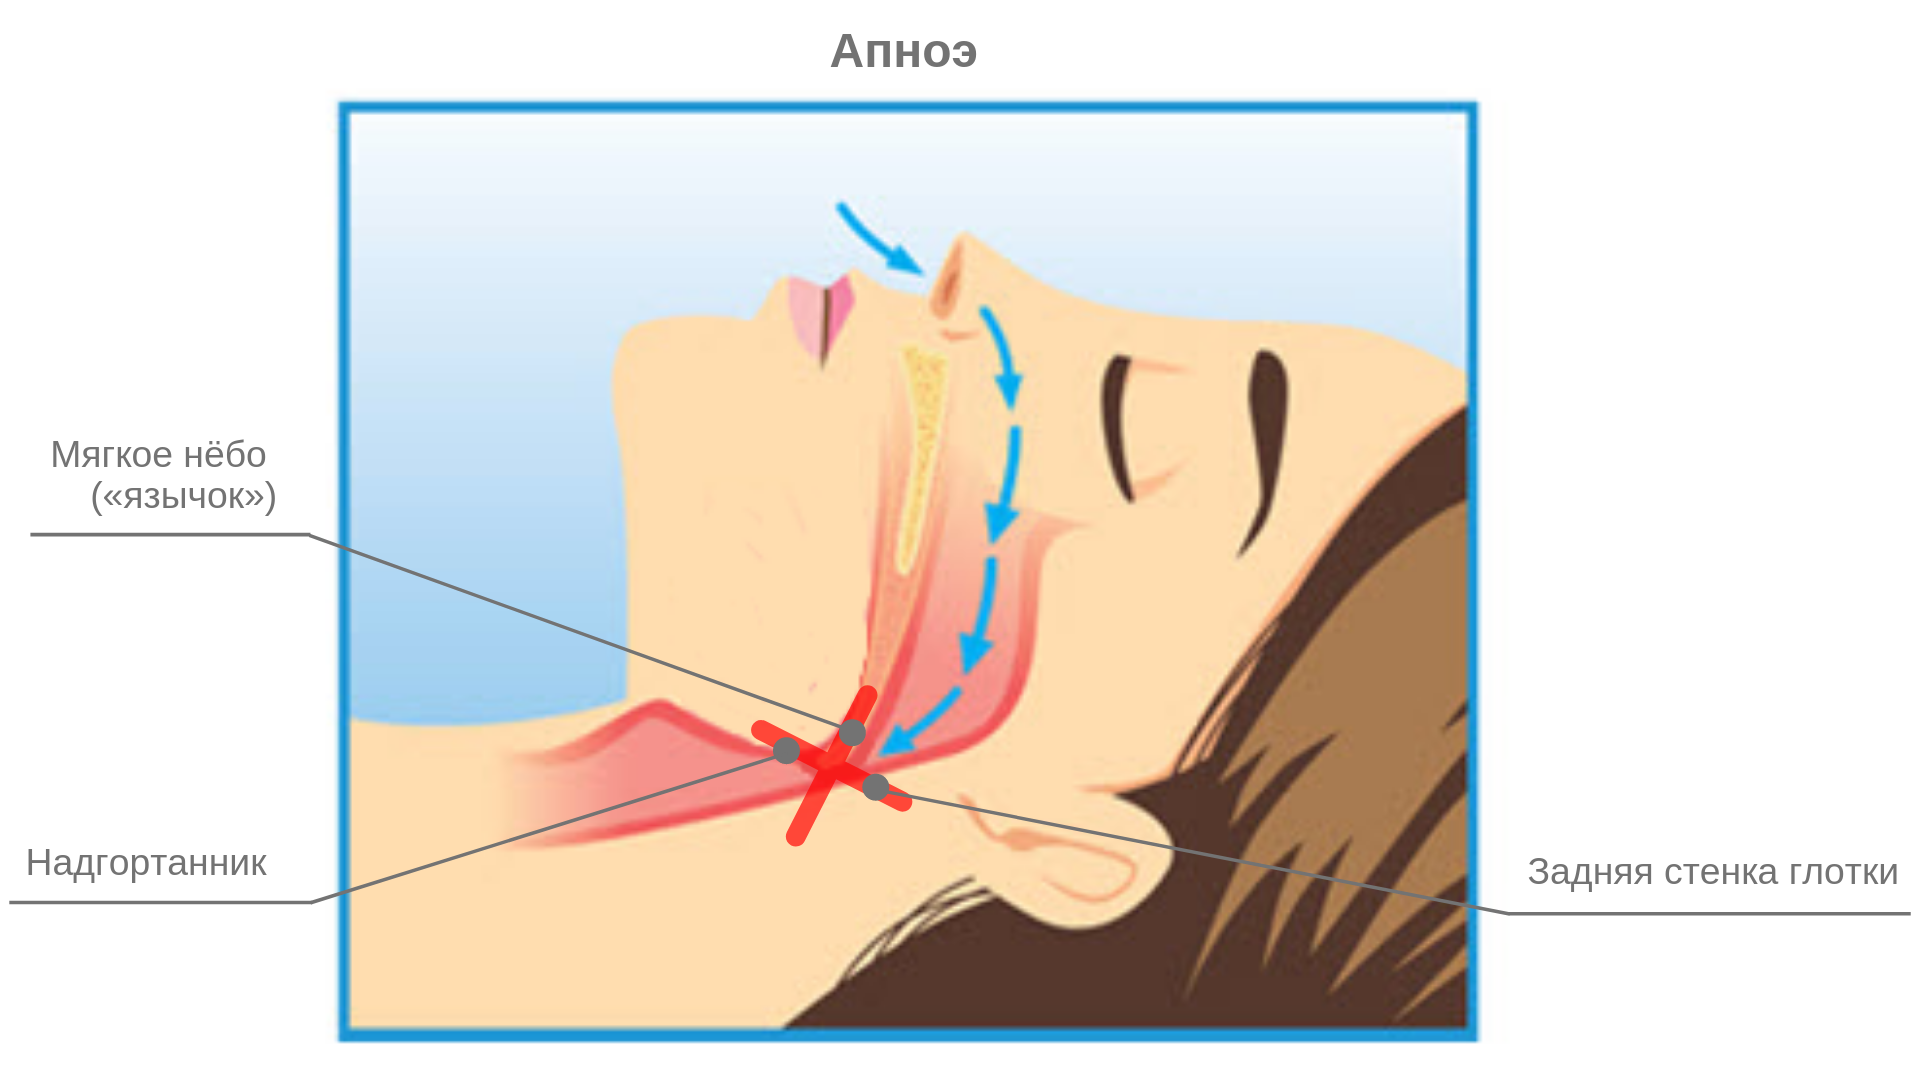 Дышать носом когда спишь. Механизм формирования апноэ сна.